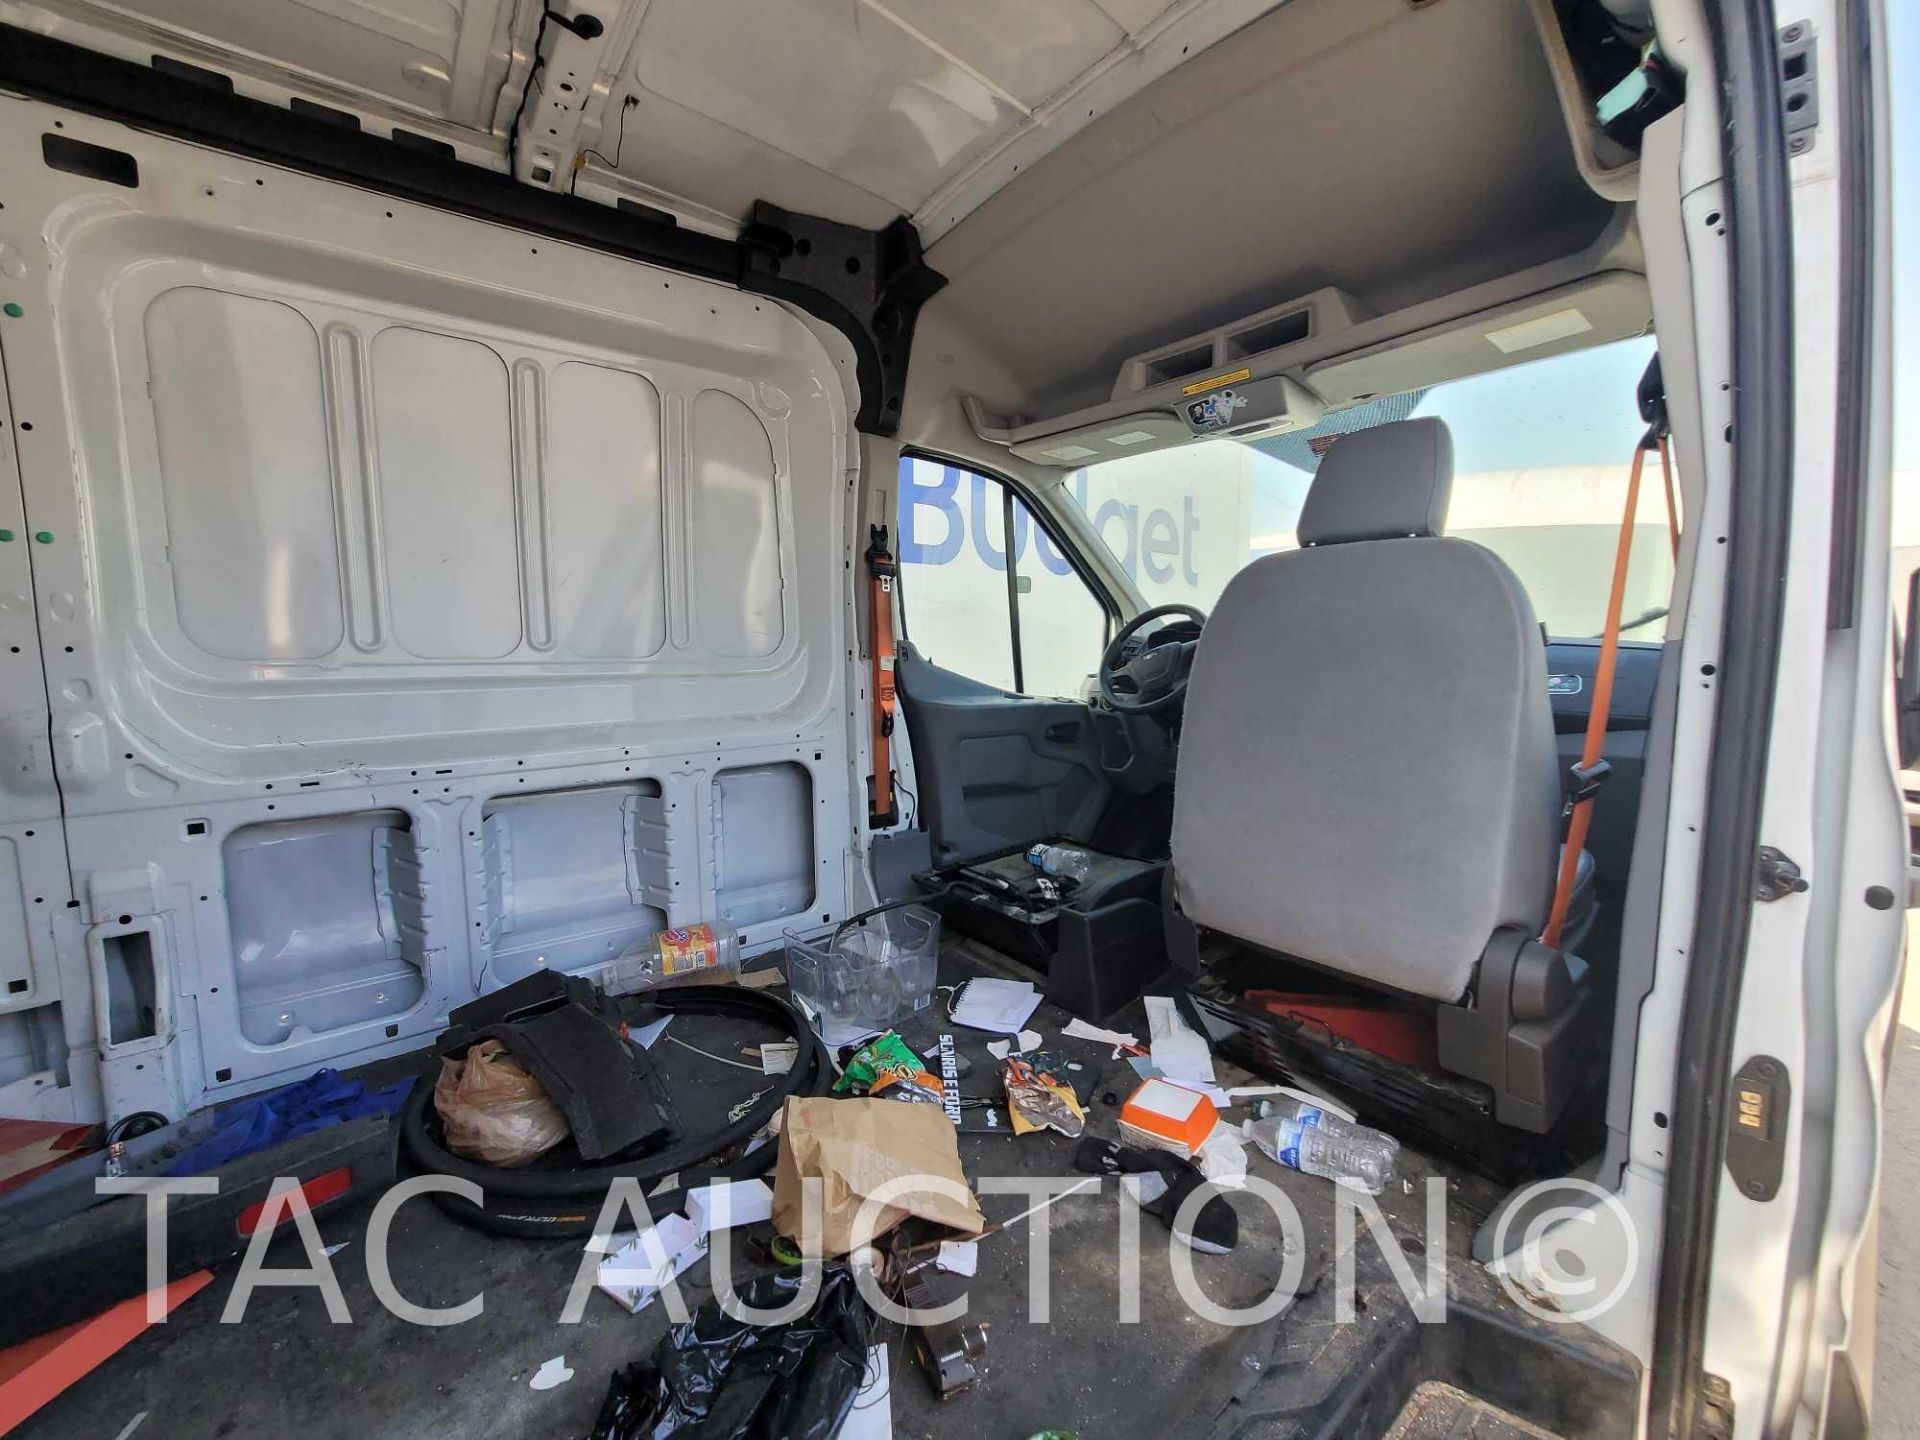 2019 Ford Transit 150 Cargo Van - Image 9 of 41